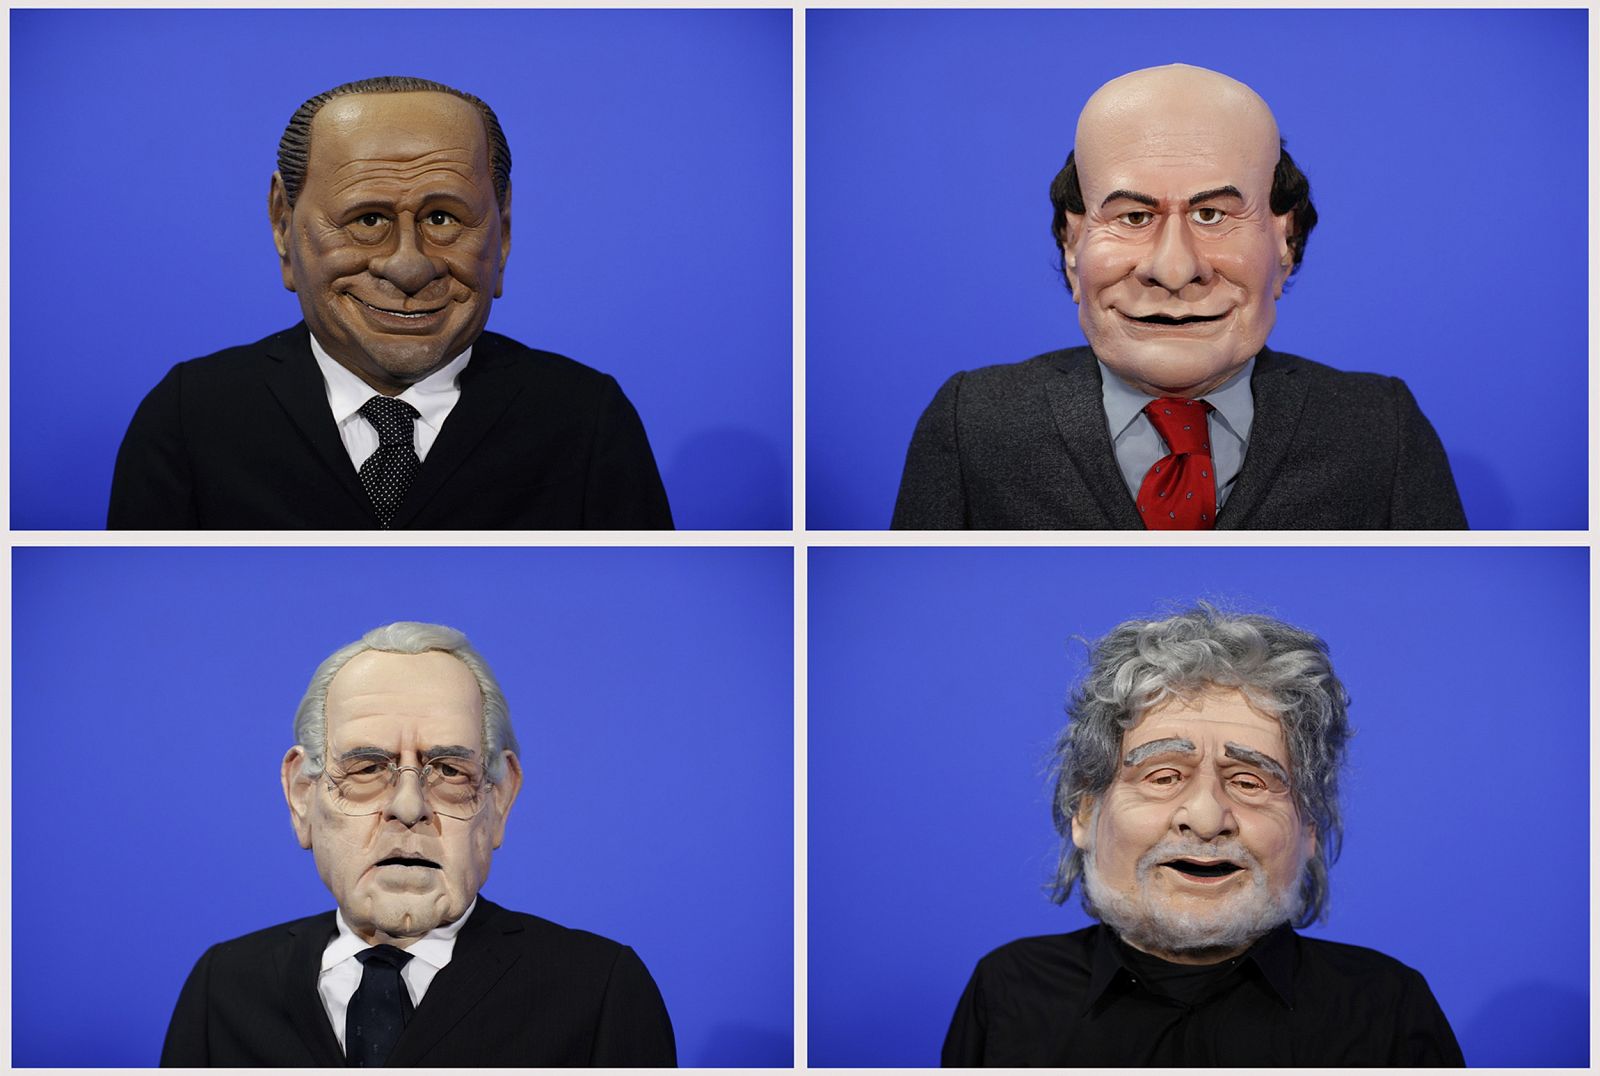 Las caricaturas de Silvio Berlusconi, Pier Luigi Bersani, Beppe Grillo, y Mario Monti en un programa de la televisión italiana.